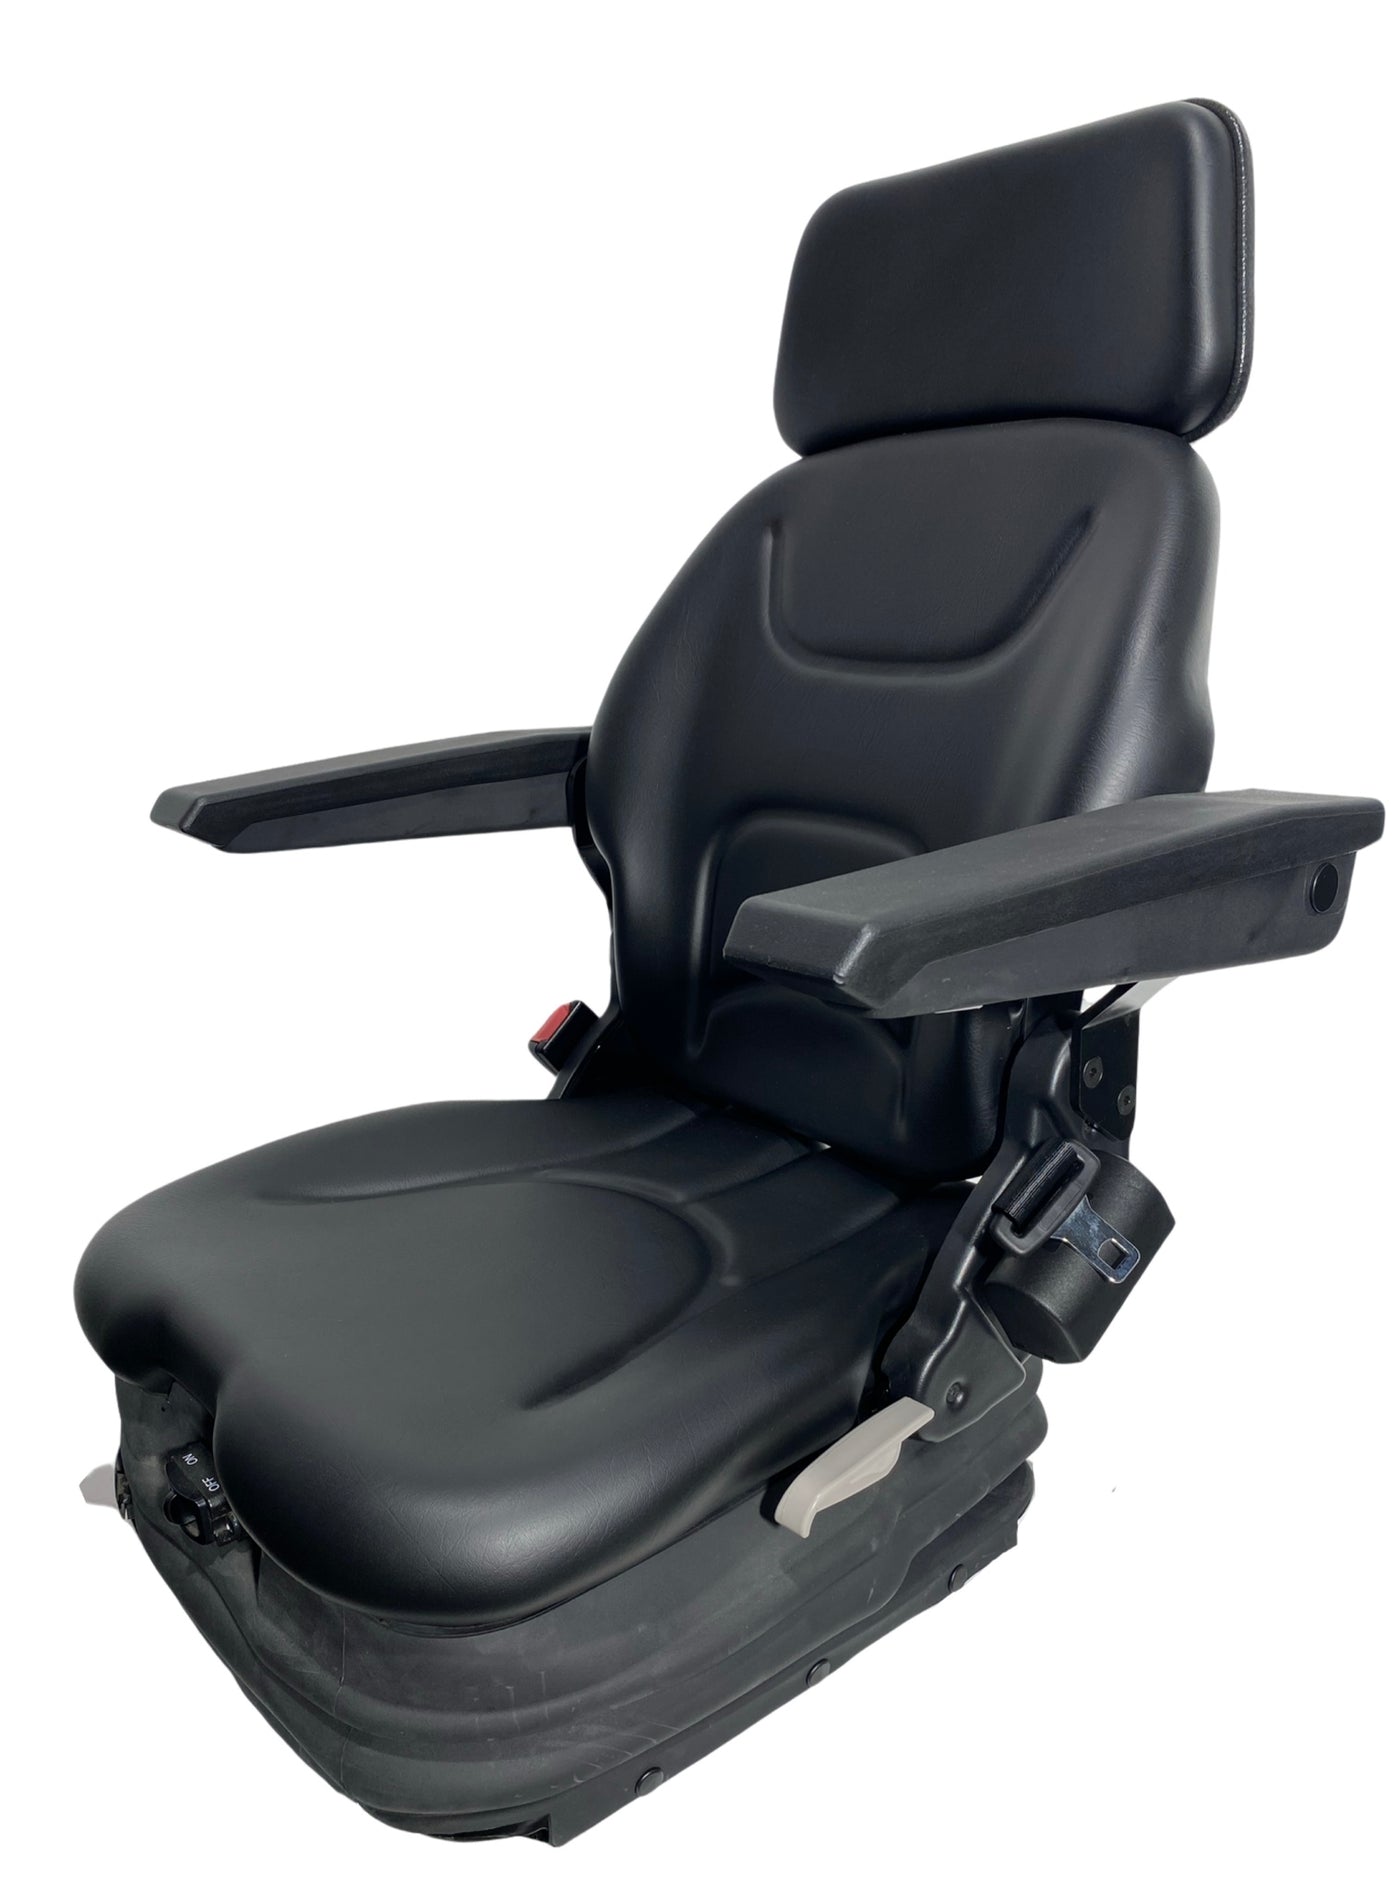 SM1-22 Air Suspension Seat